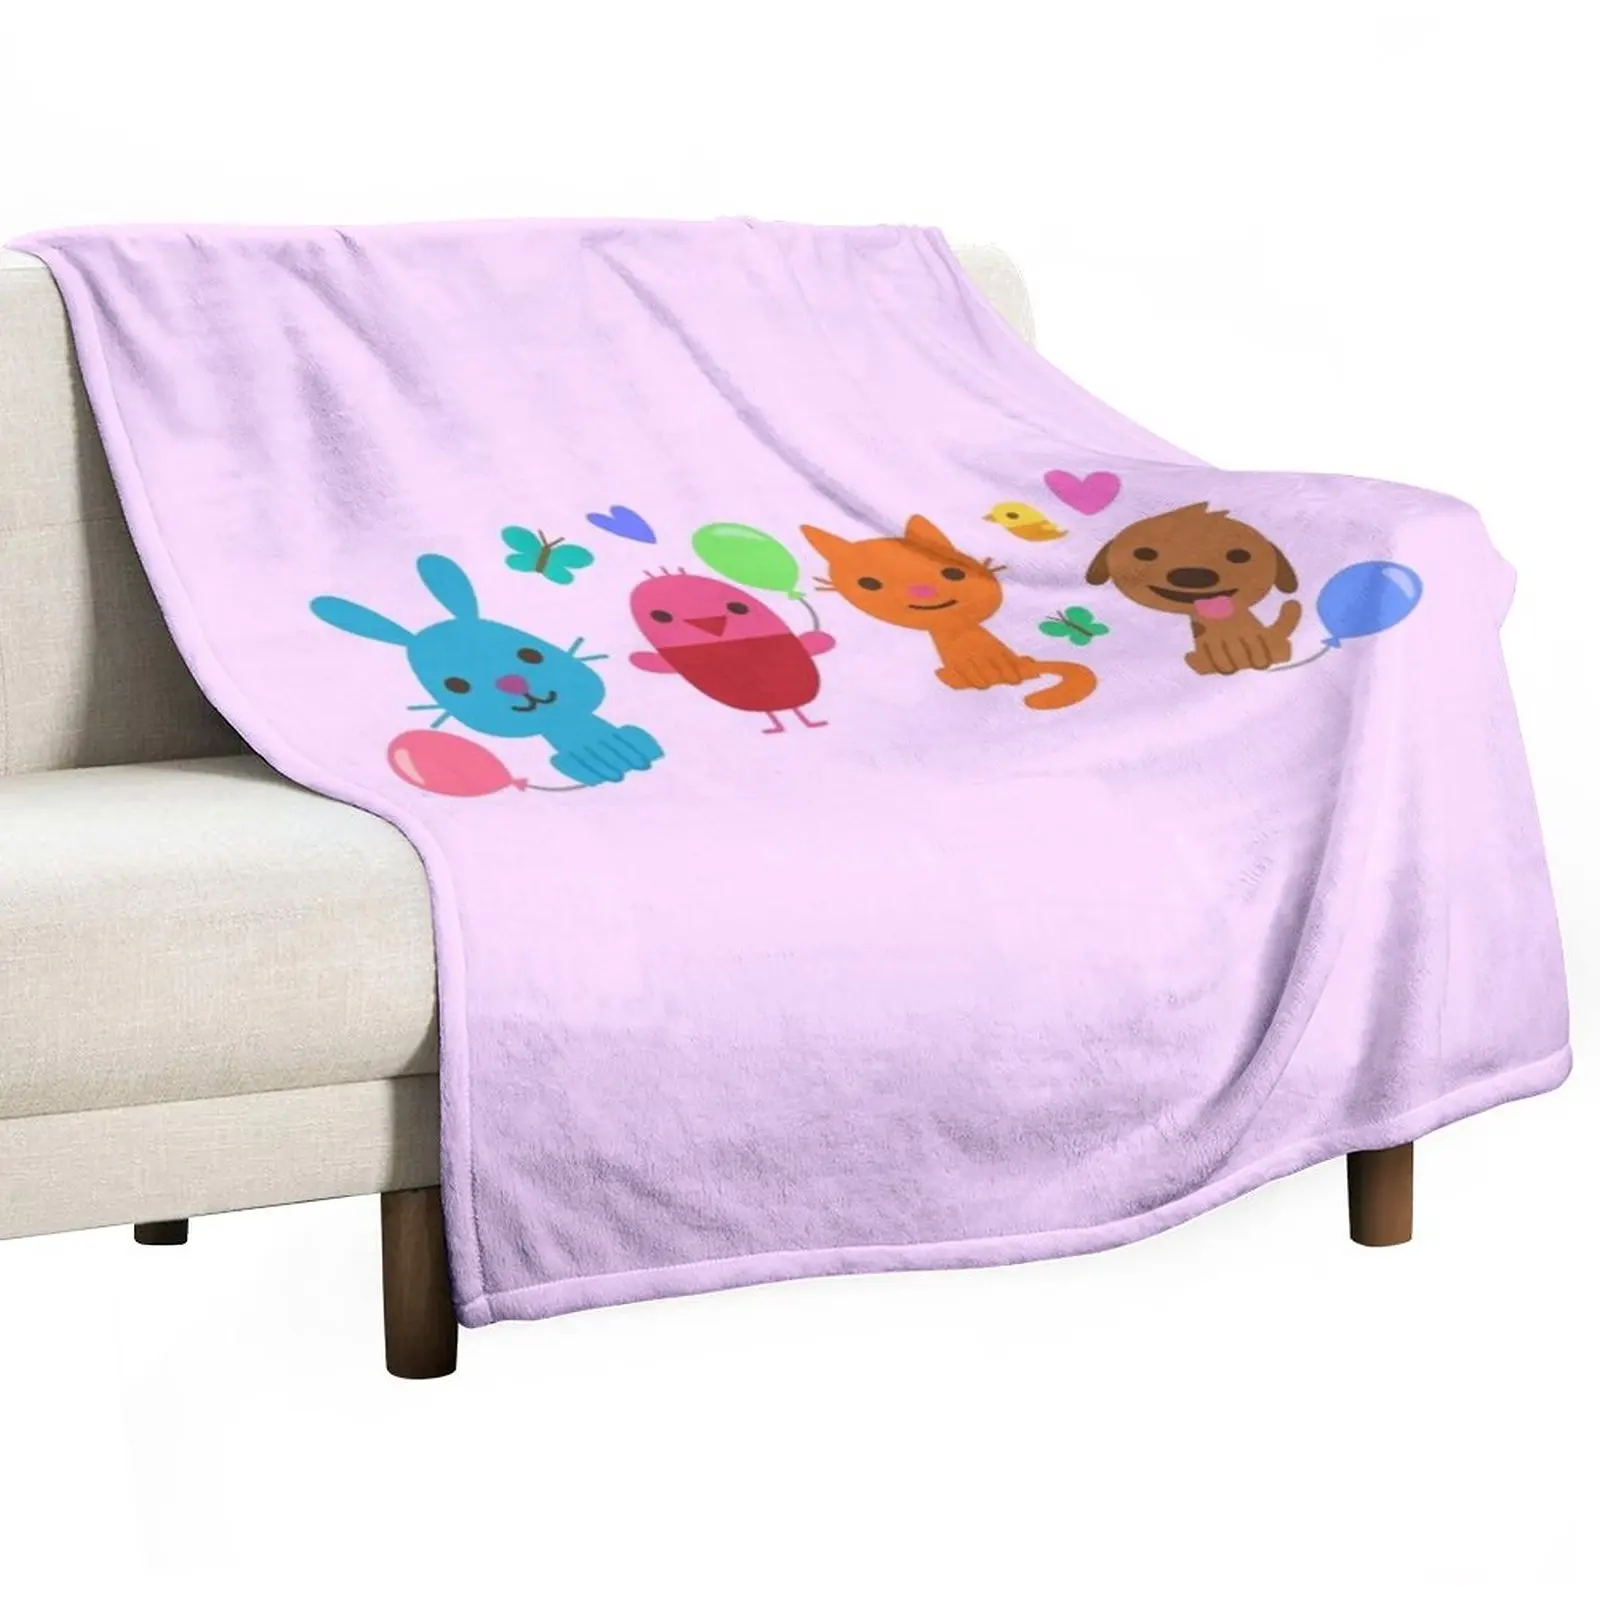 Play SAGO mini Pink Throw Blanket Blanket Sofa Sleeping Bag Blanket Beach Blanket Summer Blanket